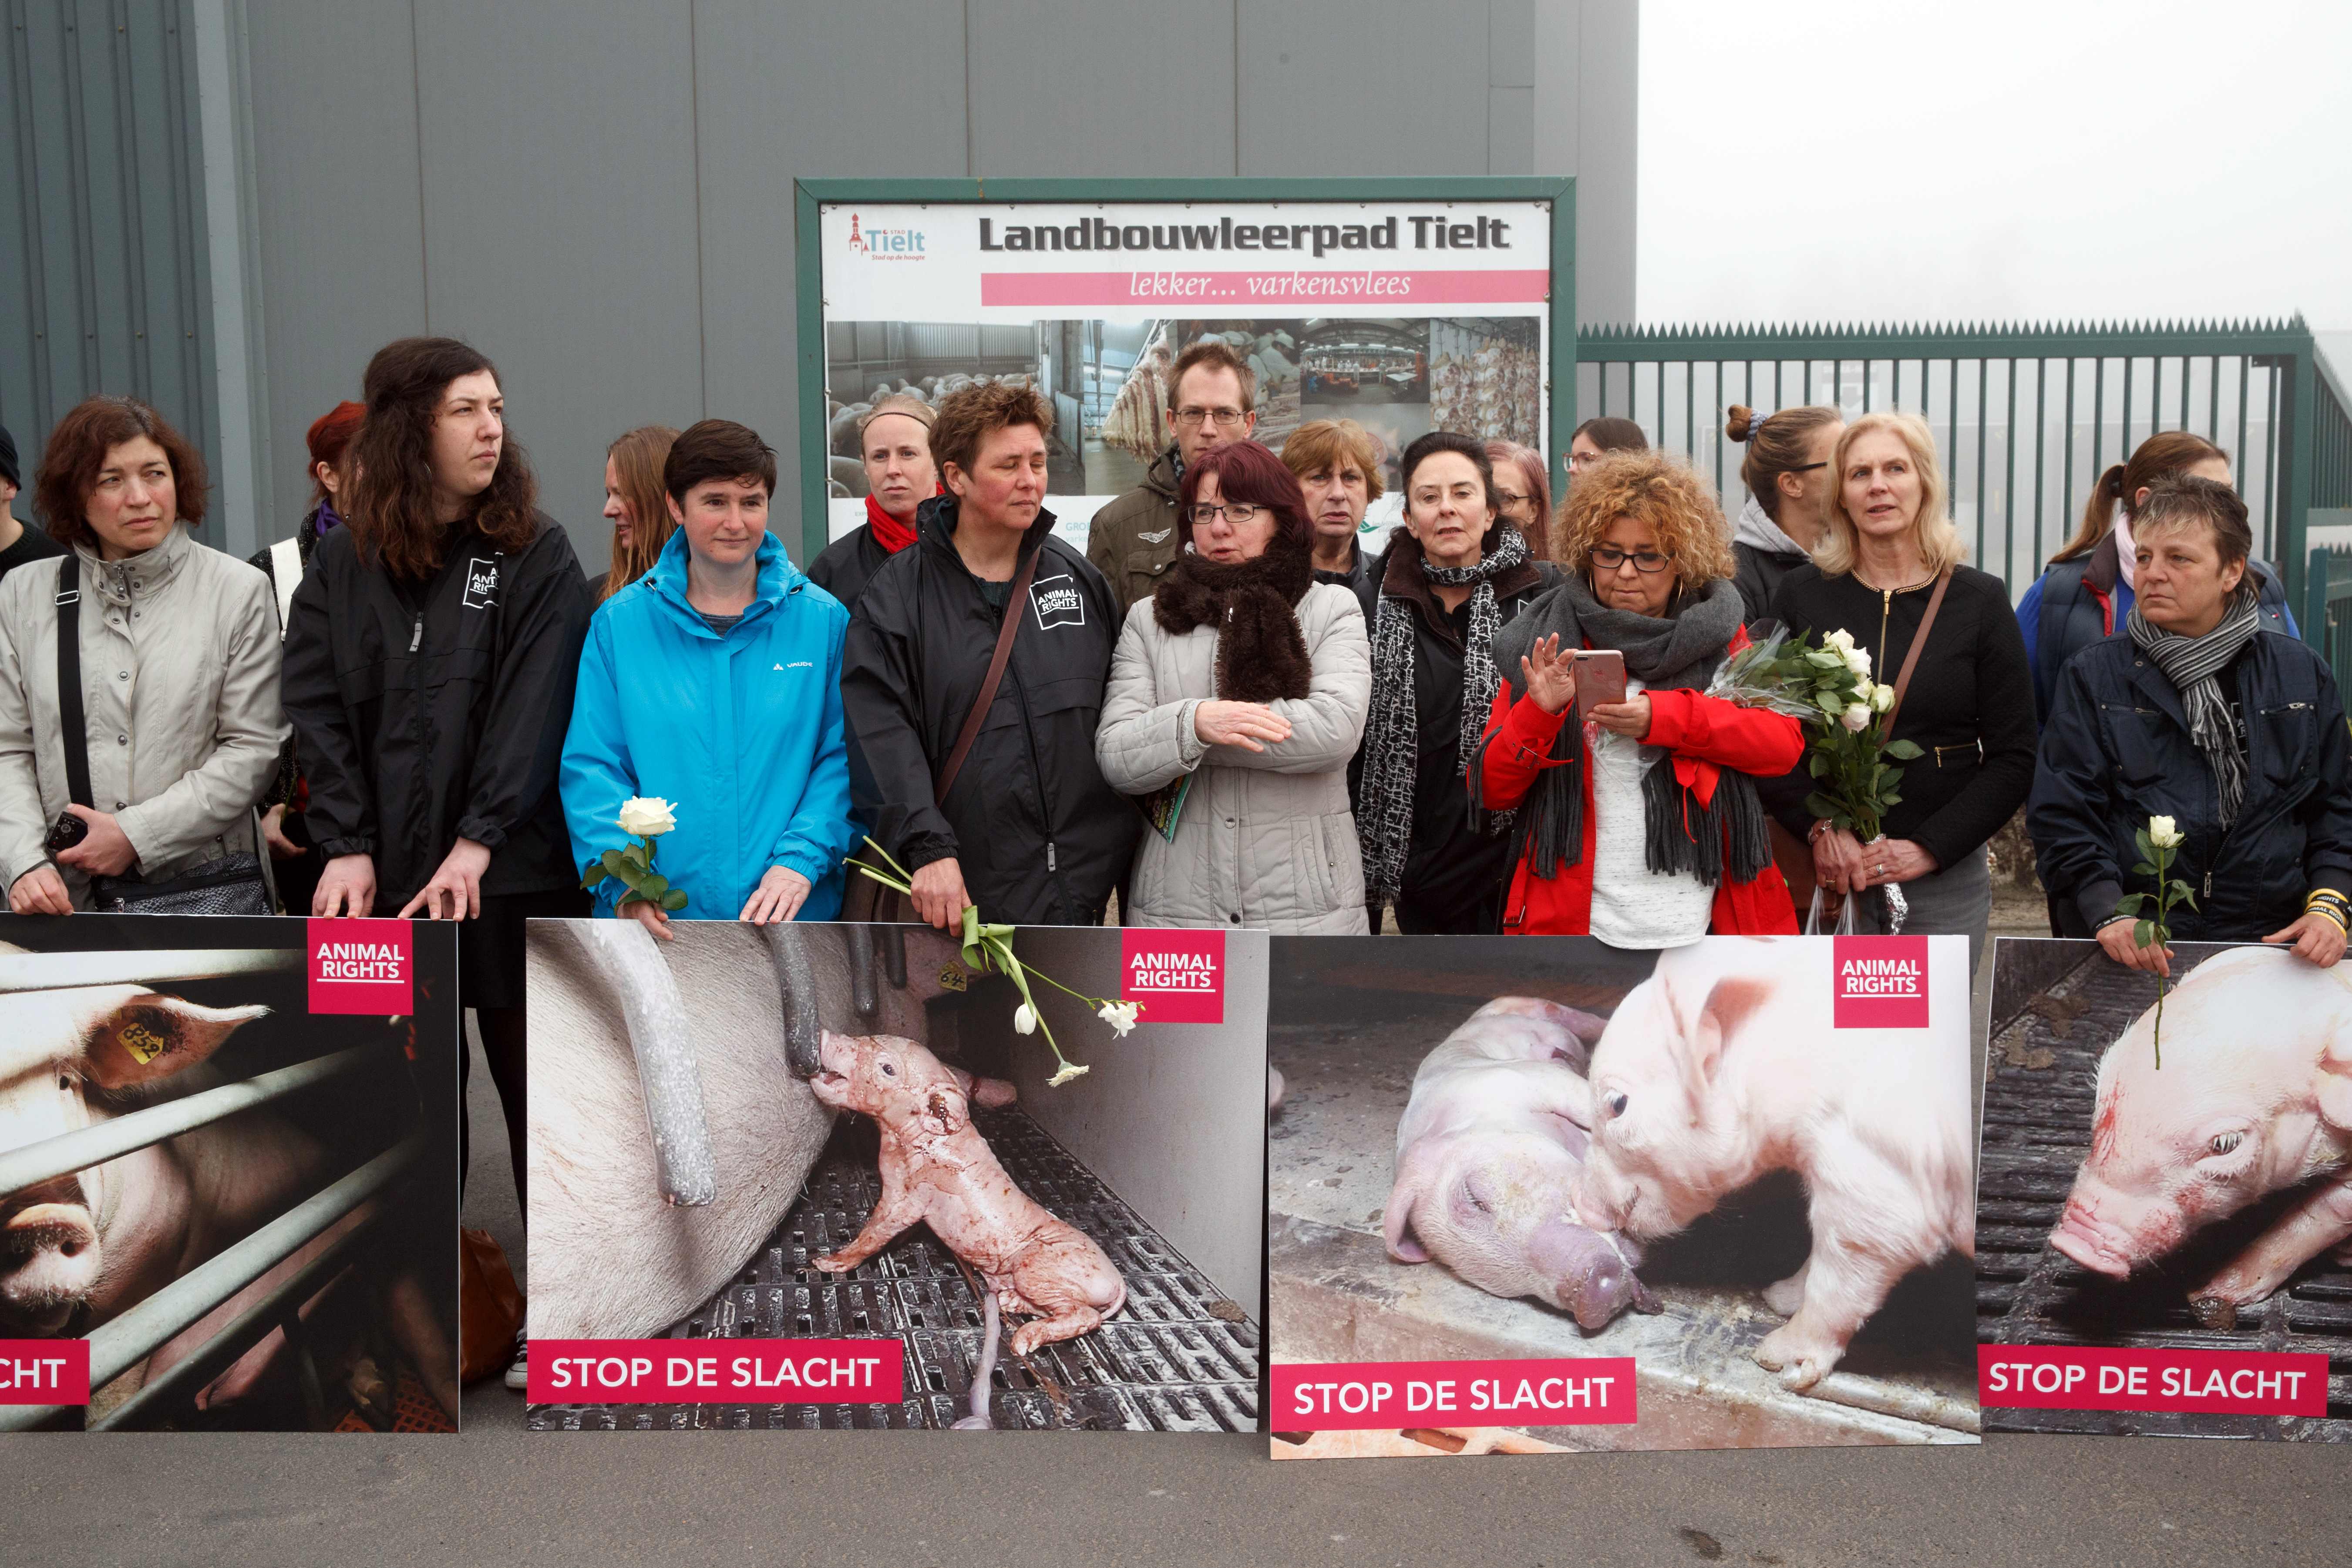 متظاهرون يحتجون على سوء معاملة الحيوانات فى بلجيكا